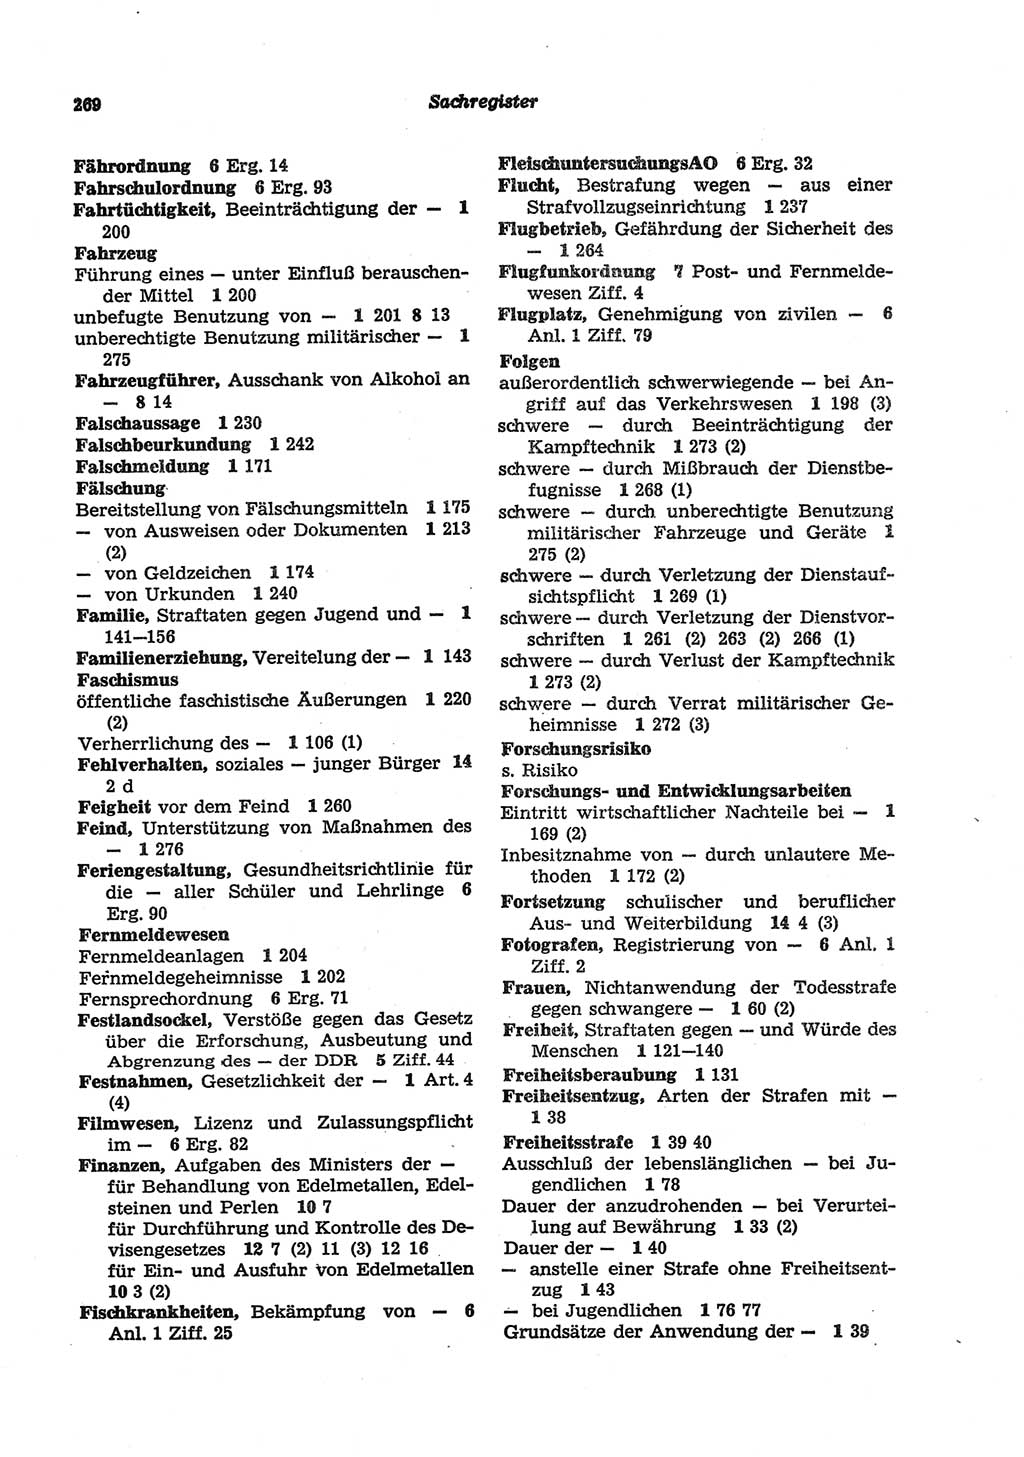 Strafgesetzbuch (StGB) der Deutschen Demokratischen Republik (DDR) und angrenzende Gesetze und Bestimmungen 1977, Seite 269 (StGB DDR Ges. Best. 1977, S. 269)